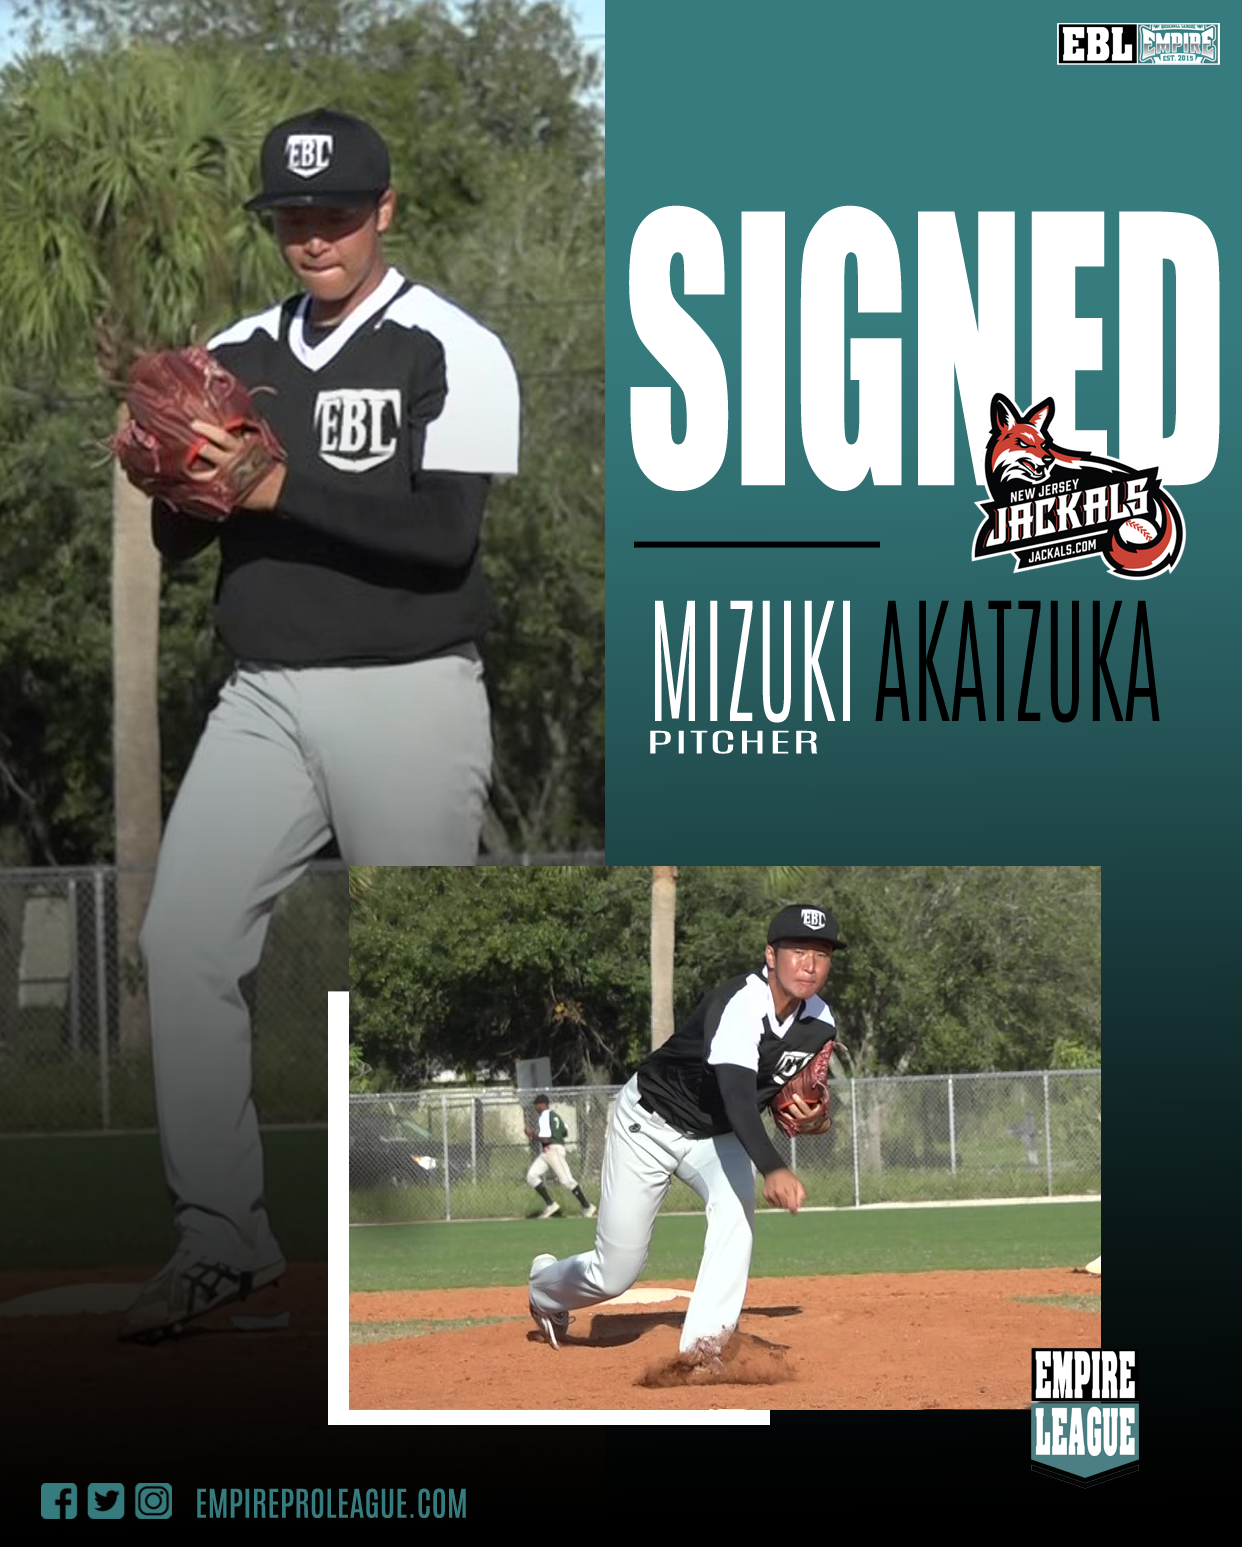 Signed-Akatzuka